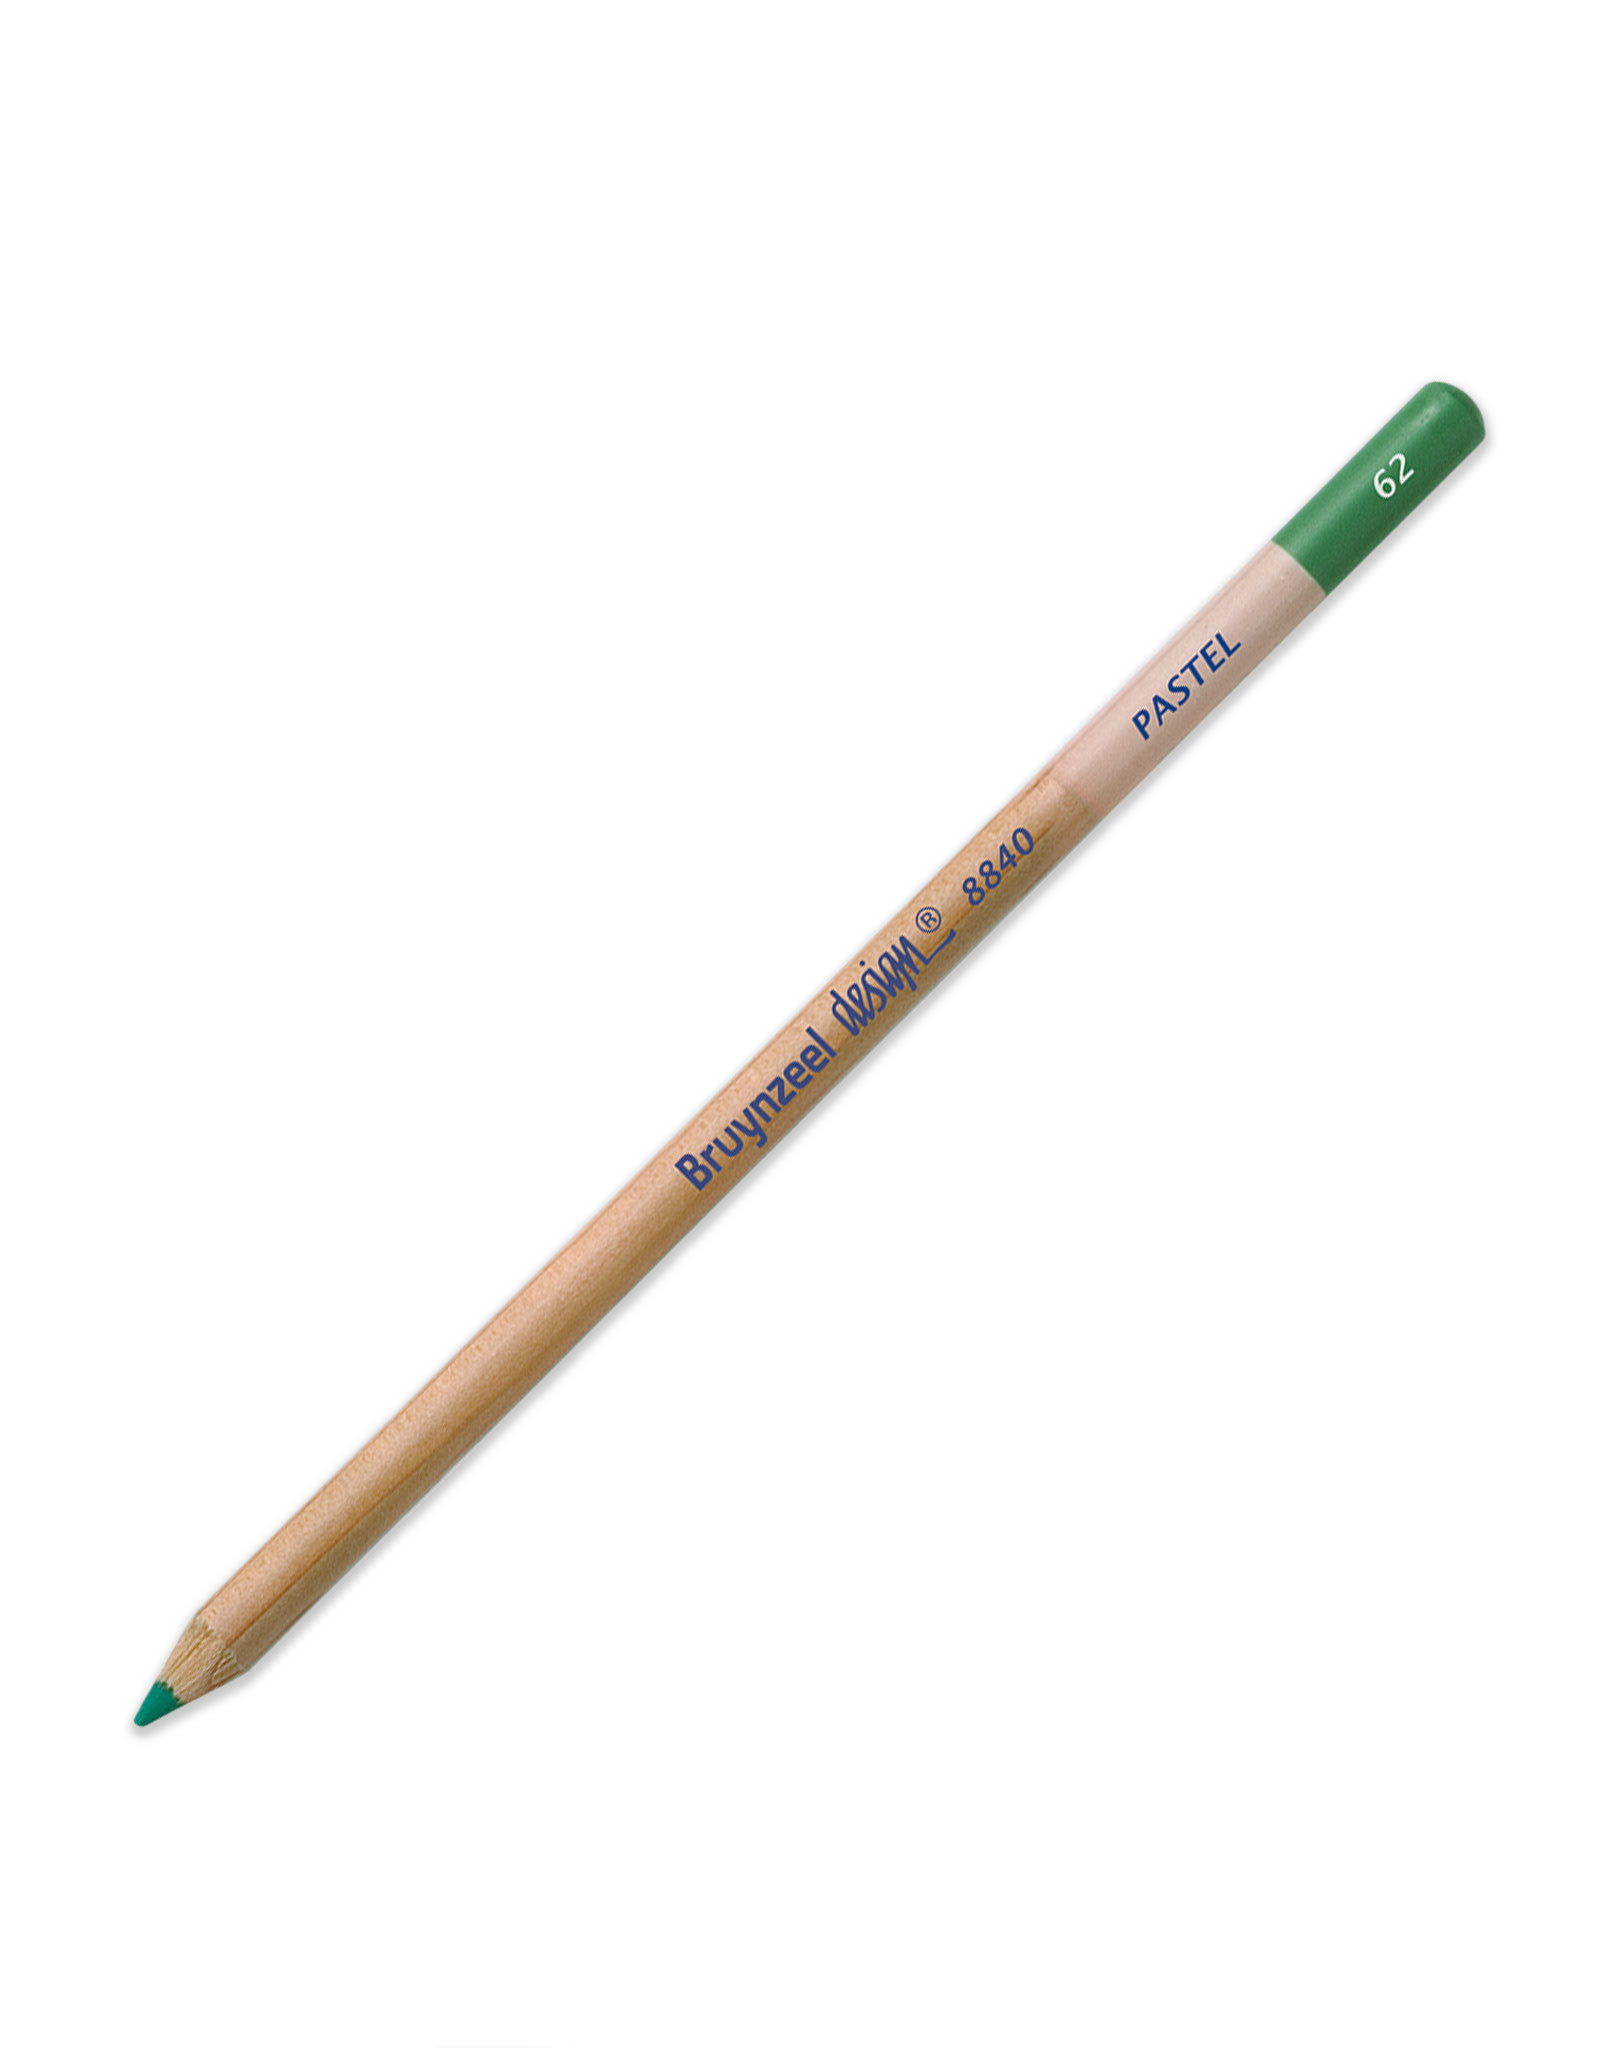 Royal Talens Bruynzeel Design Pastel Pencil, Dark Leaf Green